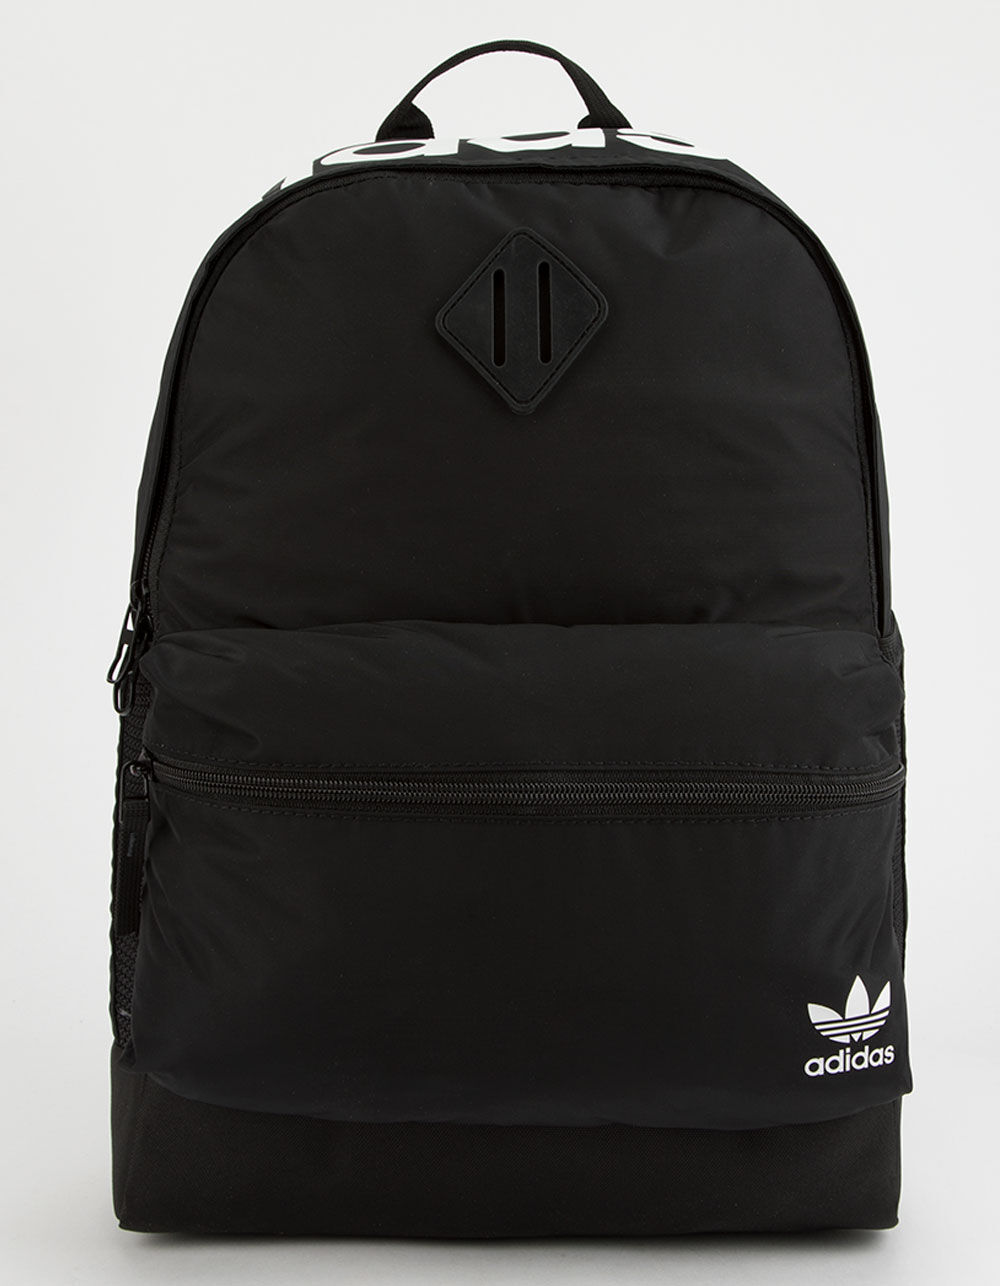 ADIDAS Originals National Black Backpack - BLACK | Tillys